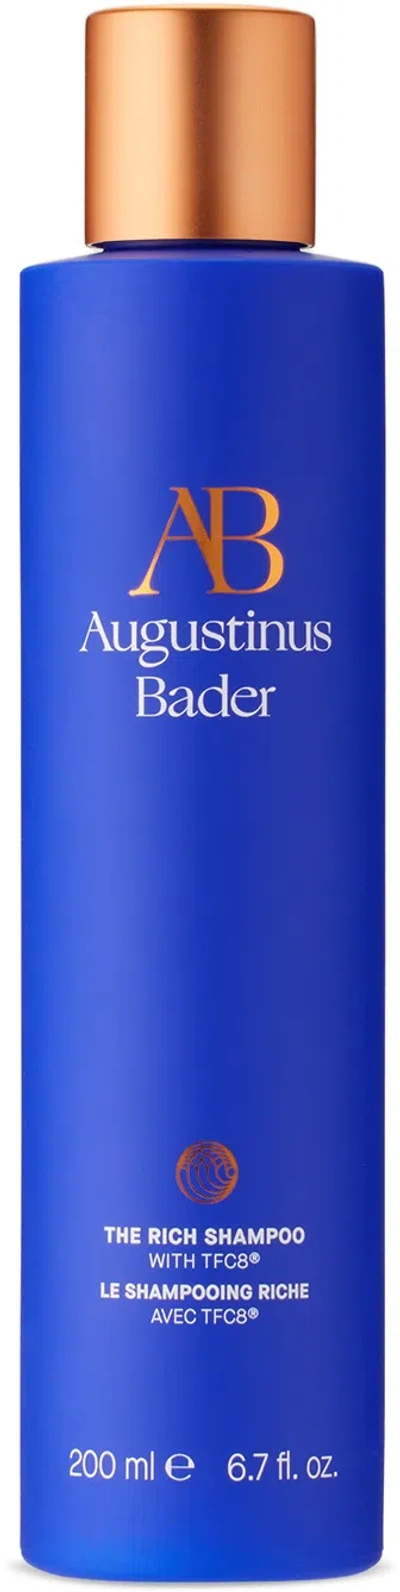 Augustinus Bader The Rich Shampoo, 200 ml In N/a